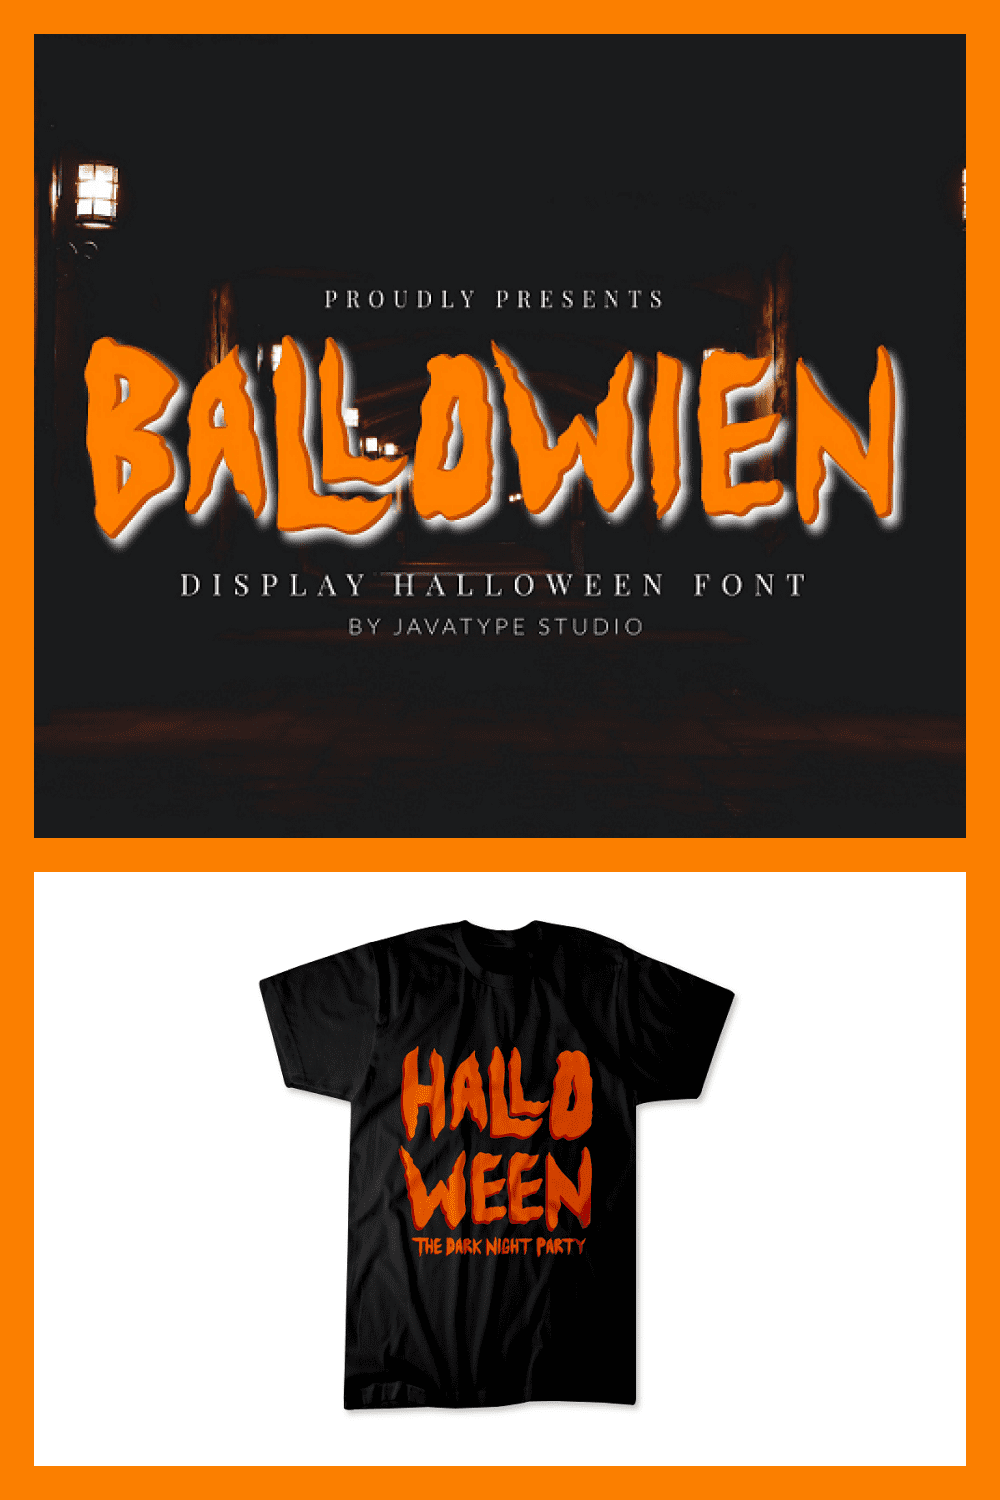 91 Ballowien – Halloween Font